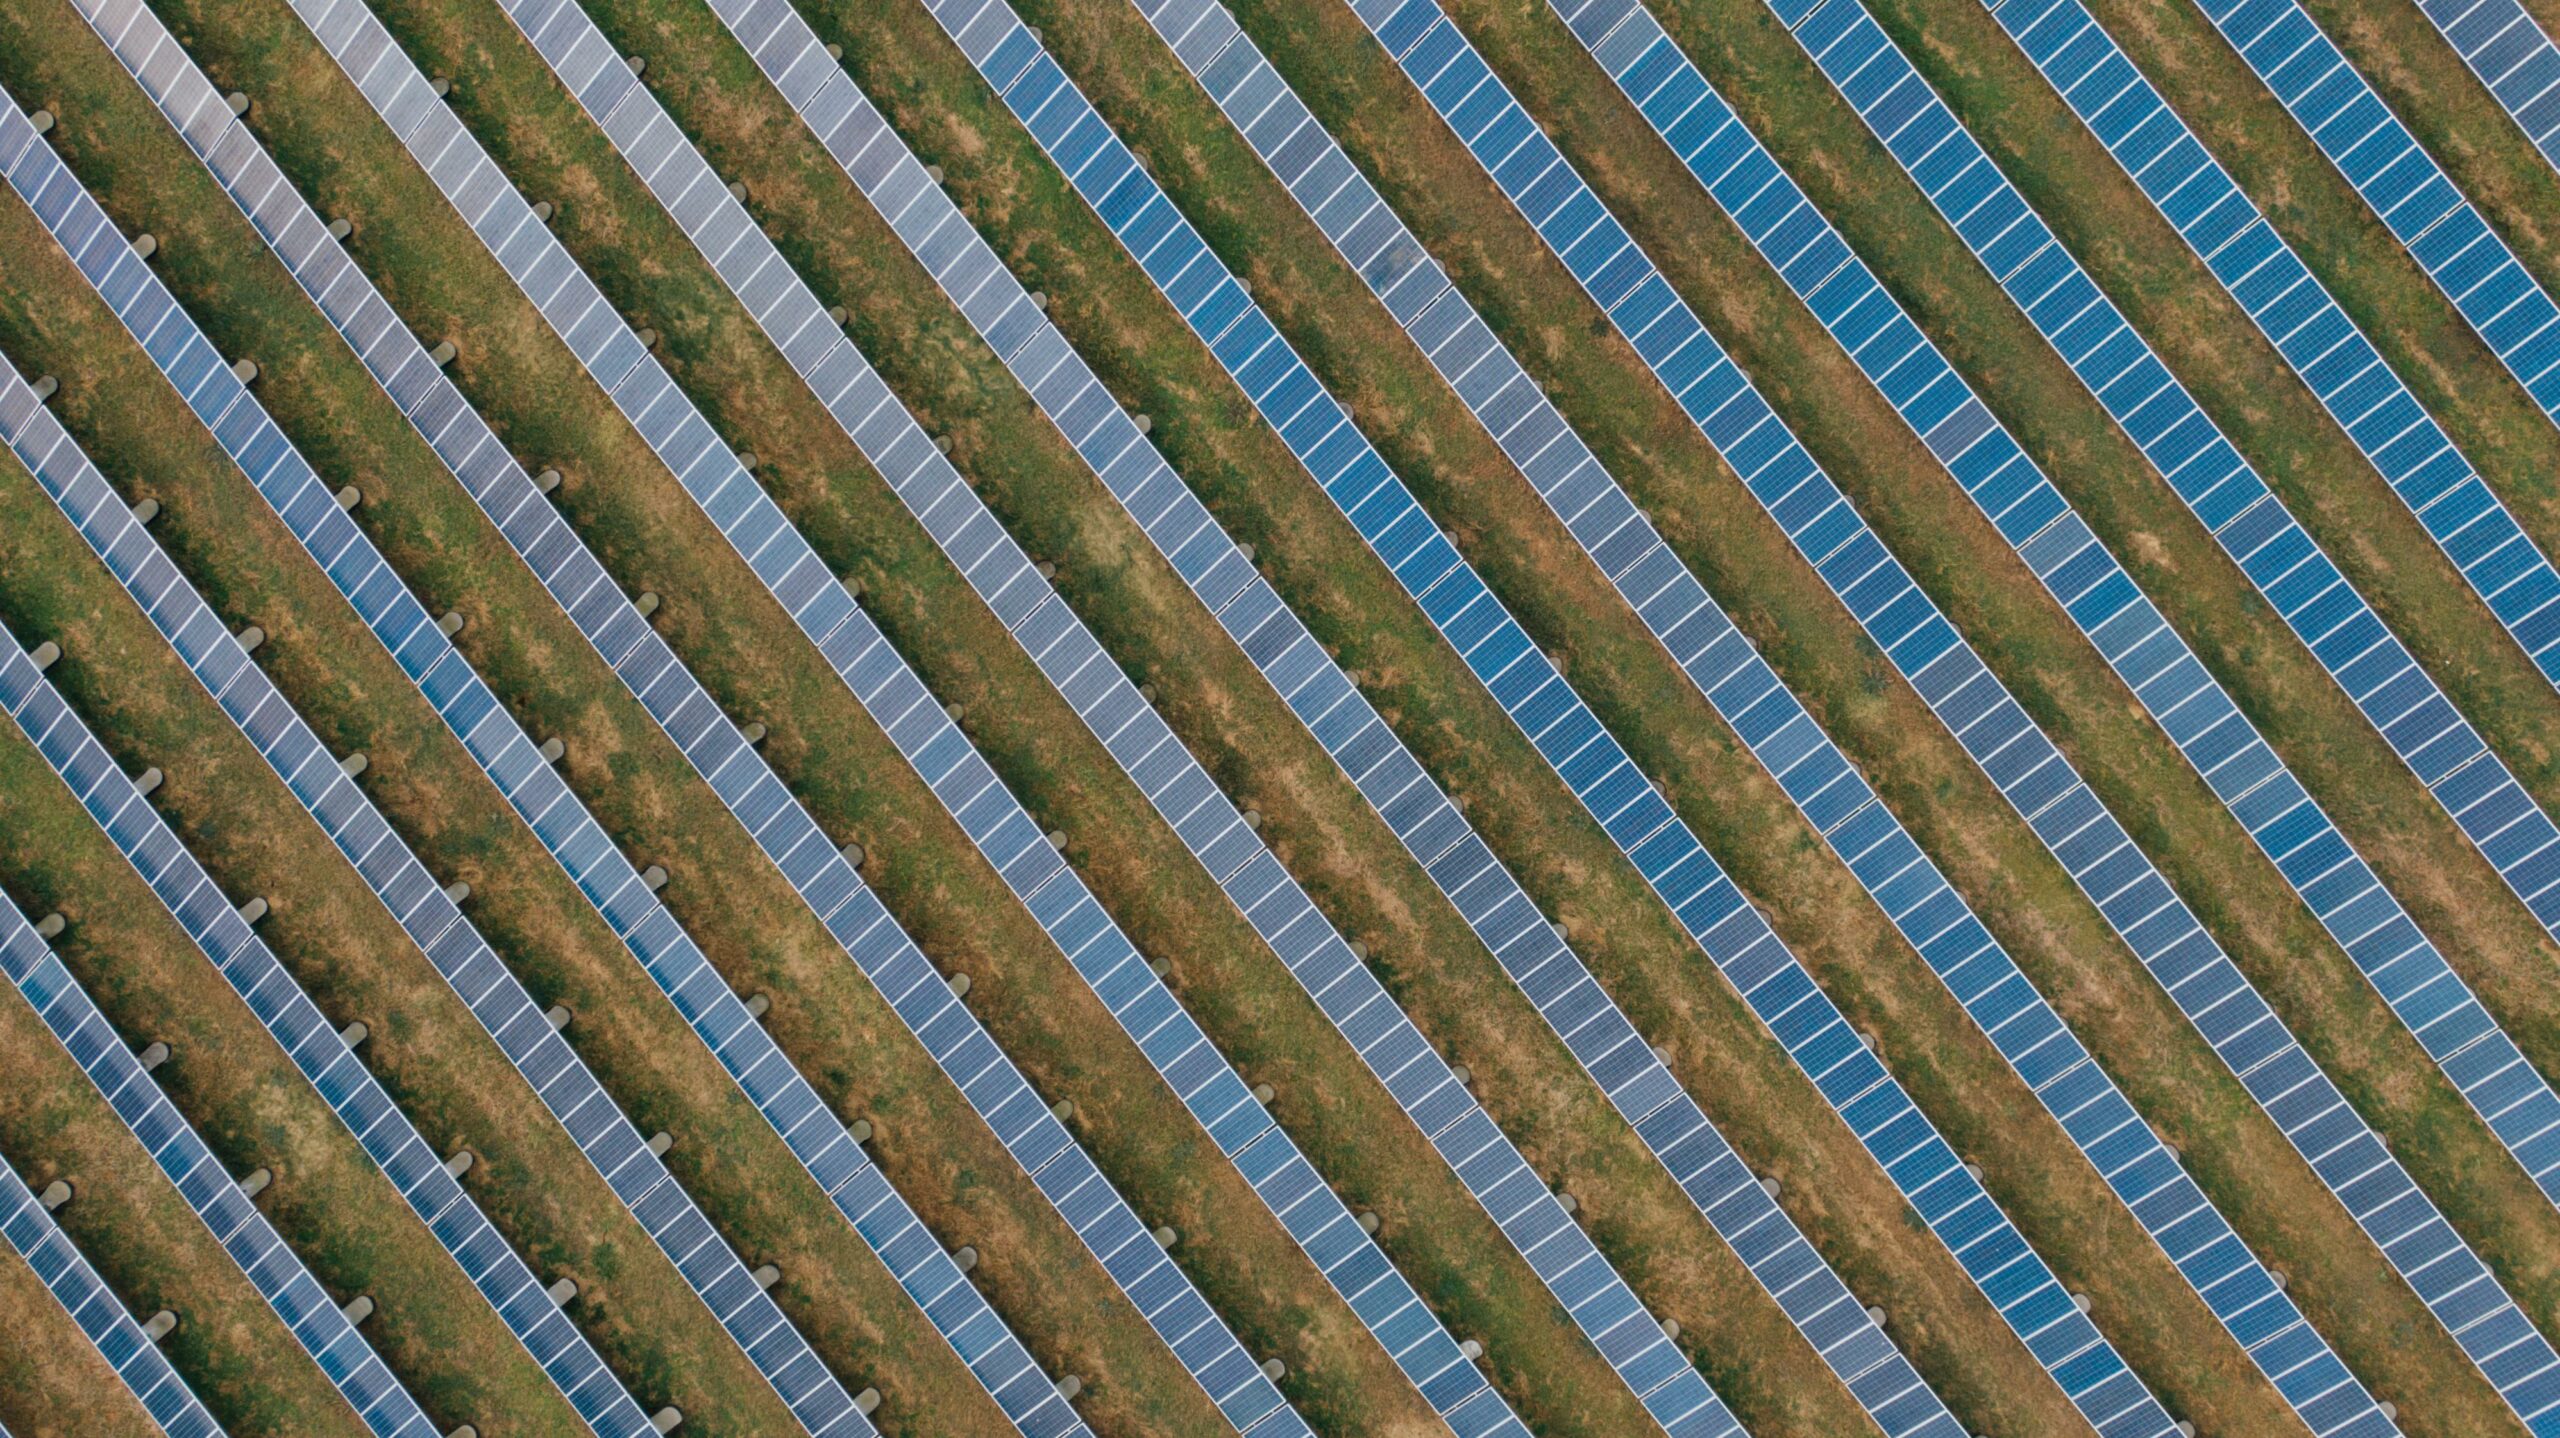 Green Horse e Advant Nctm con Alternus Clean Energy e Undo nella vendita di 13 impianti fotovoltaici